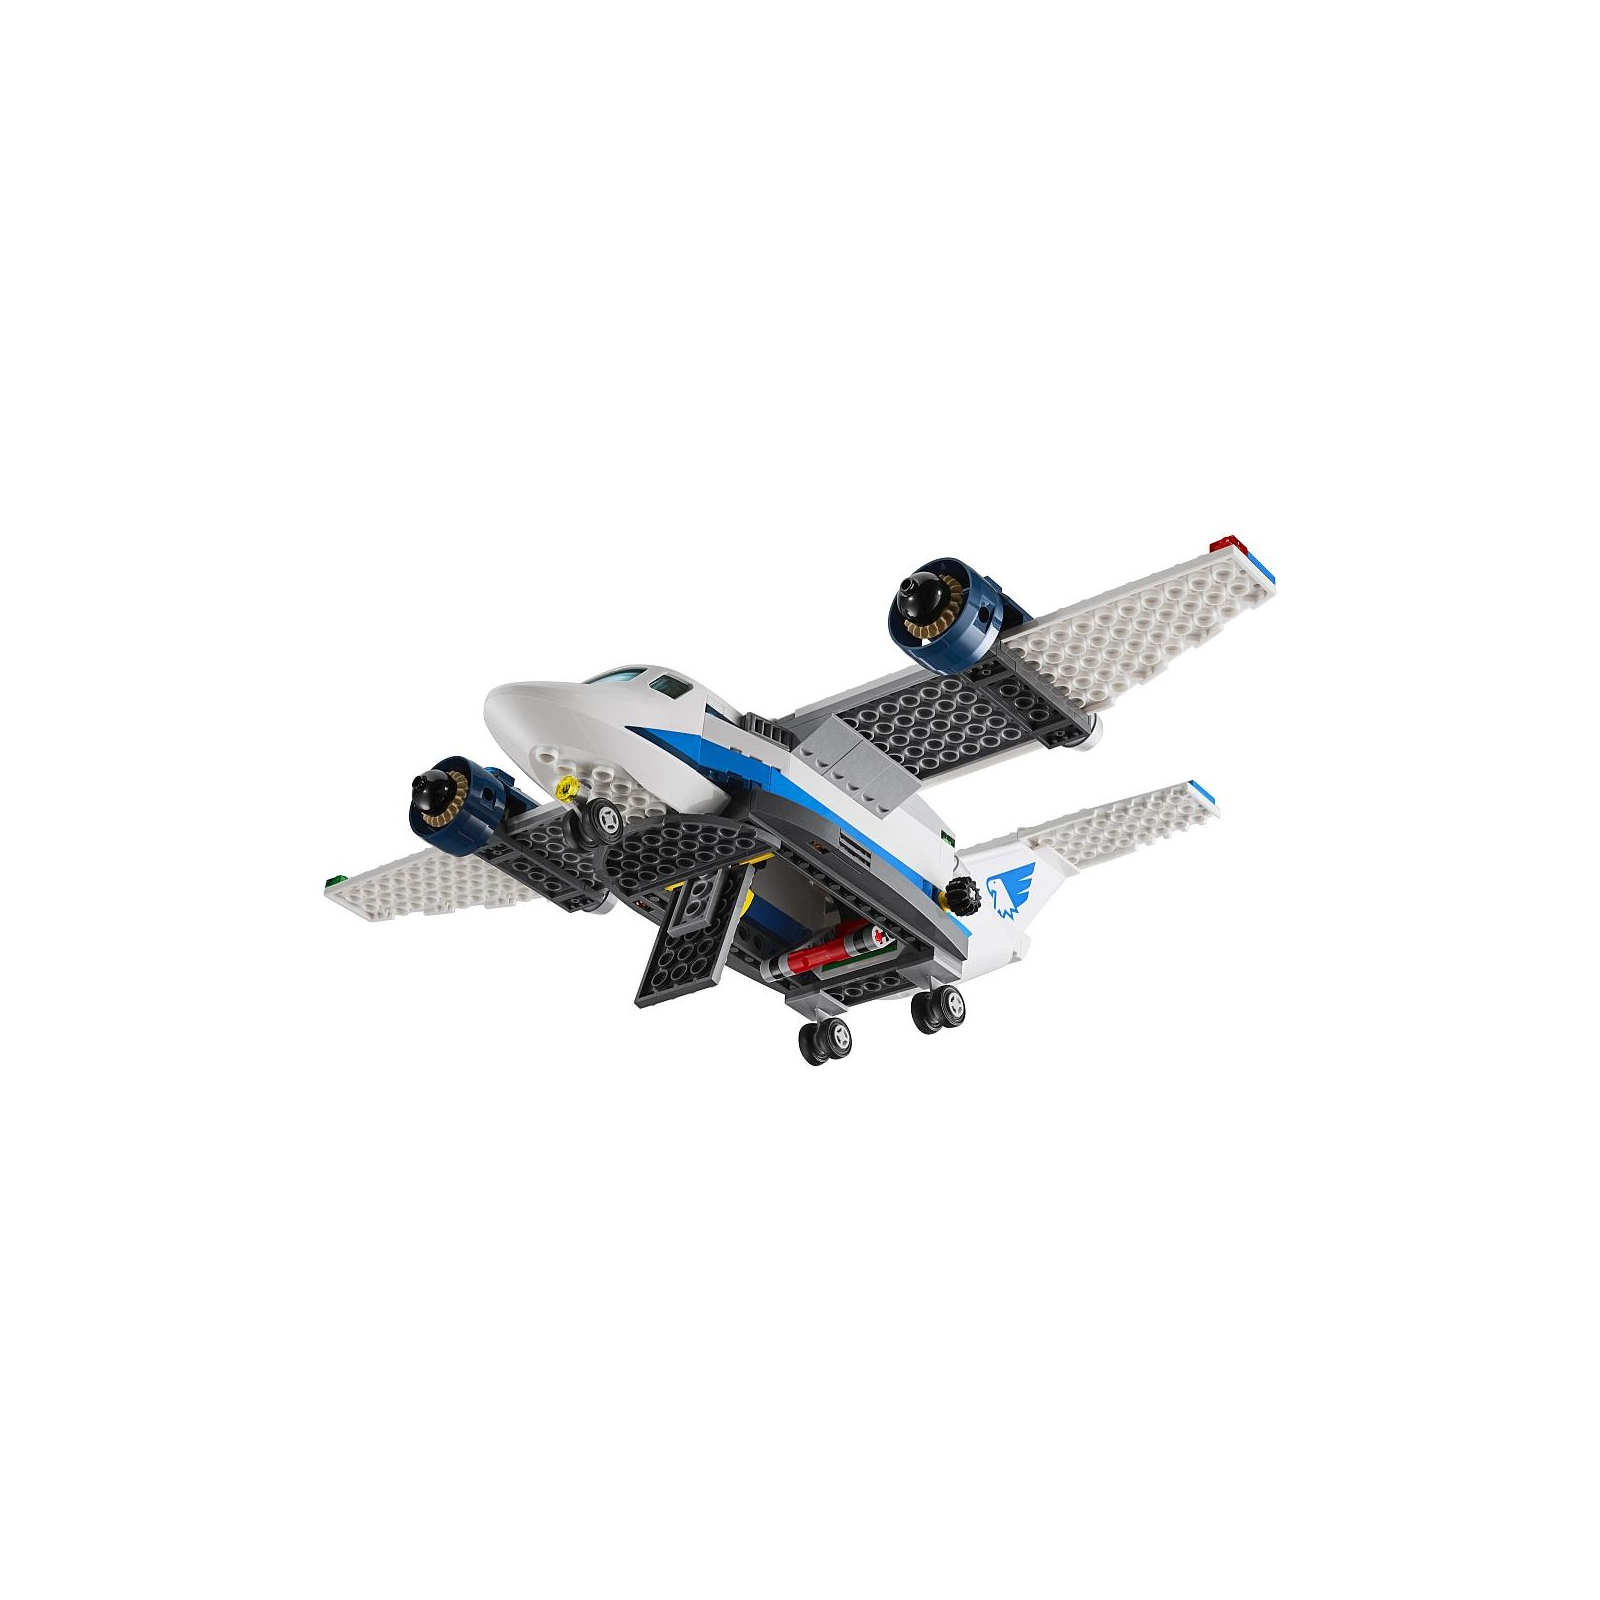 Конструктор LEGO City Повітряна поліція: авіабаза (60210) зображення 5